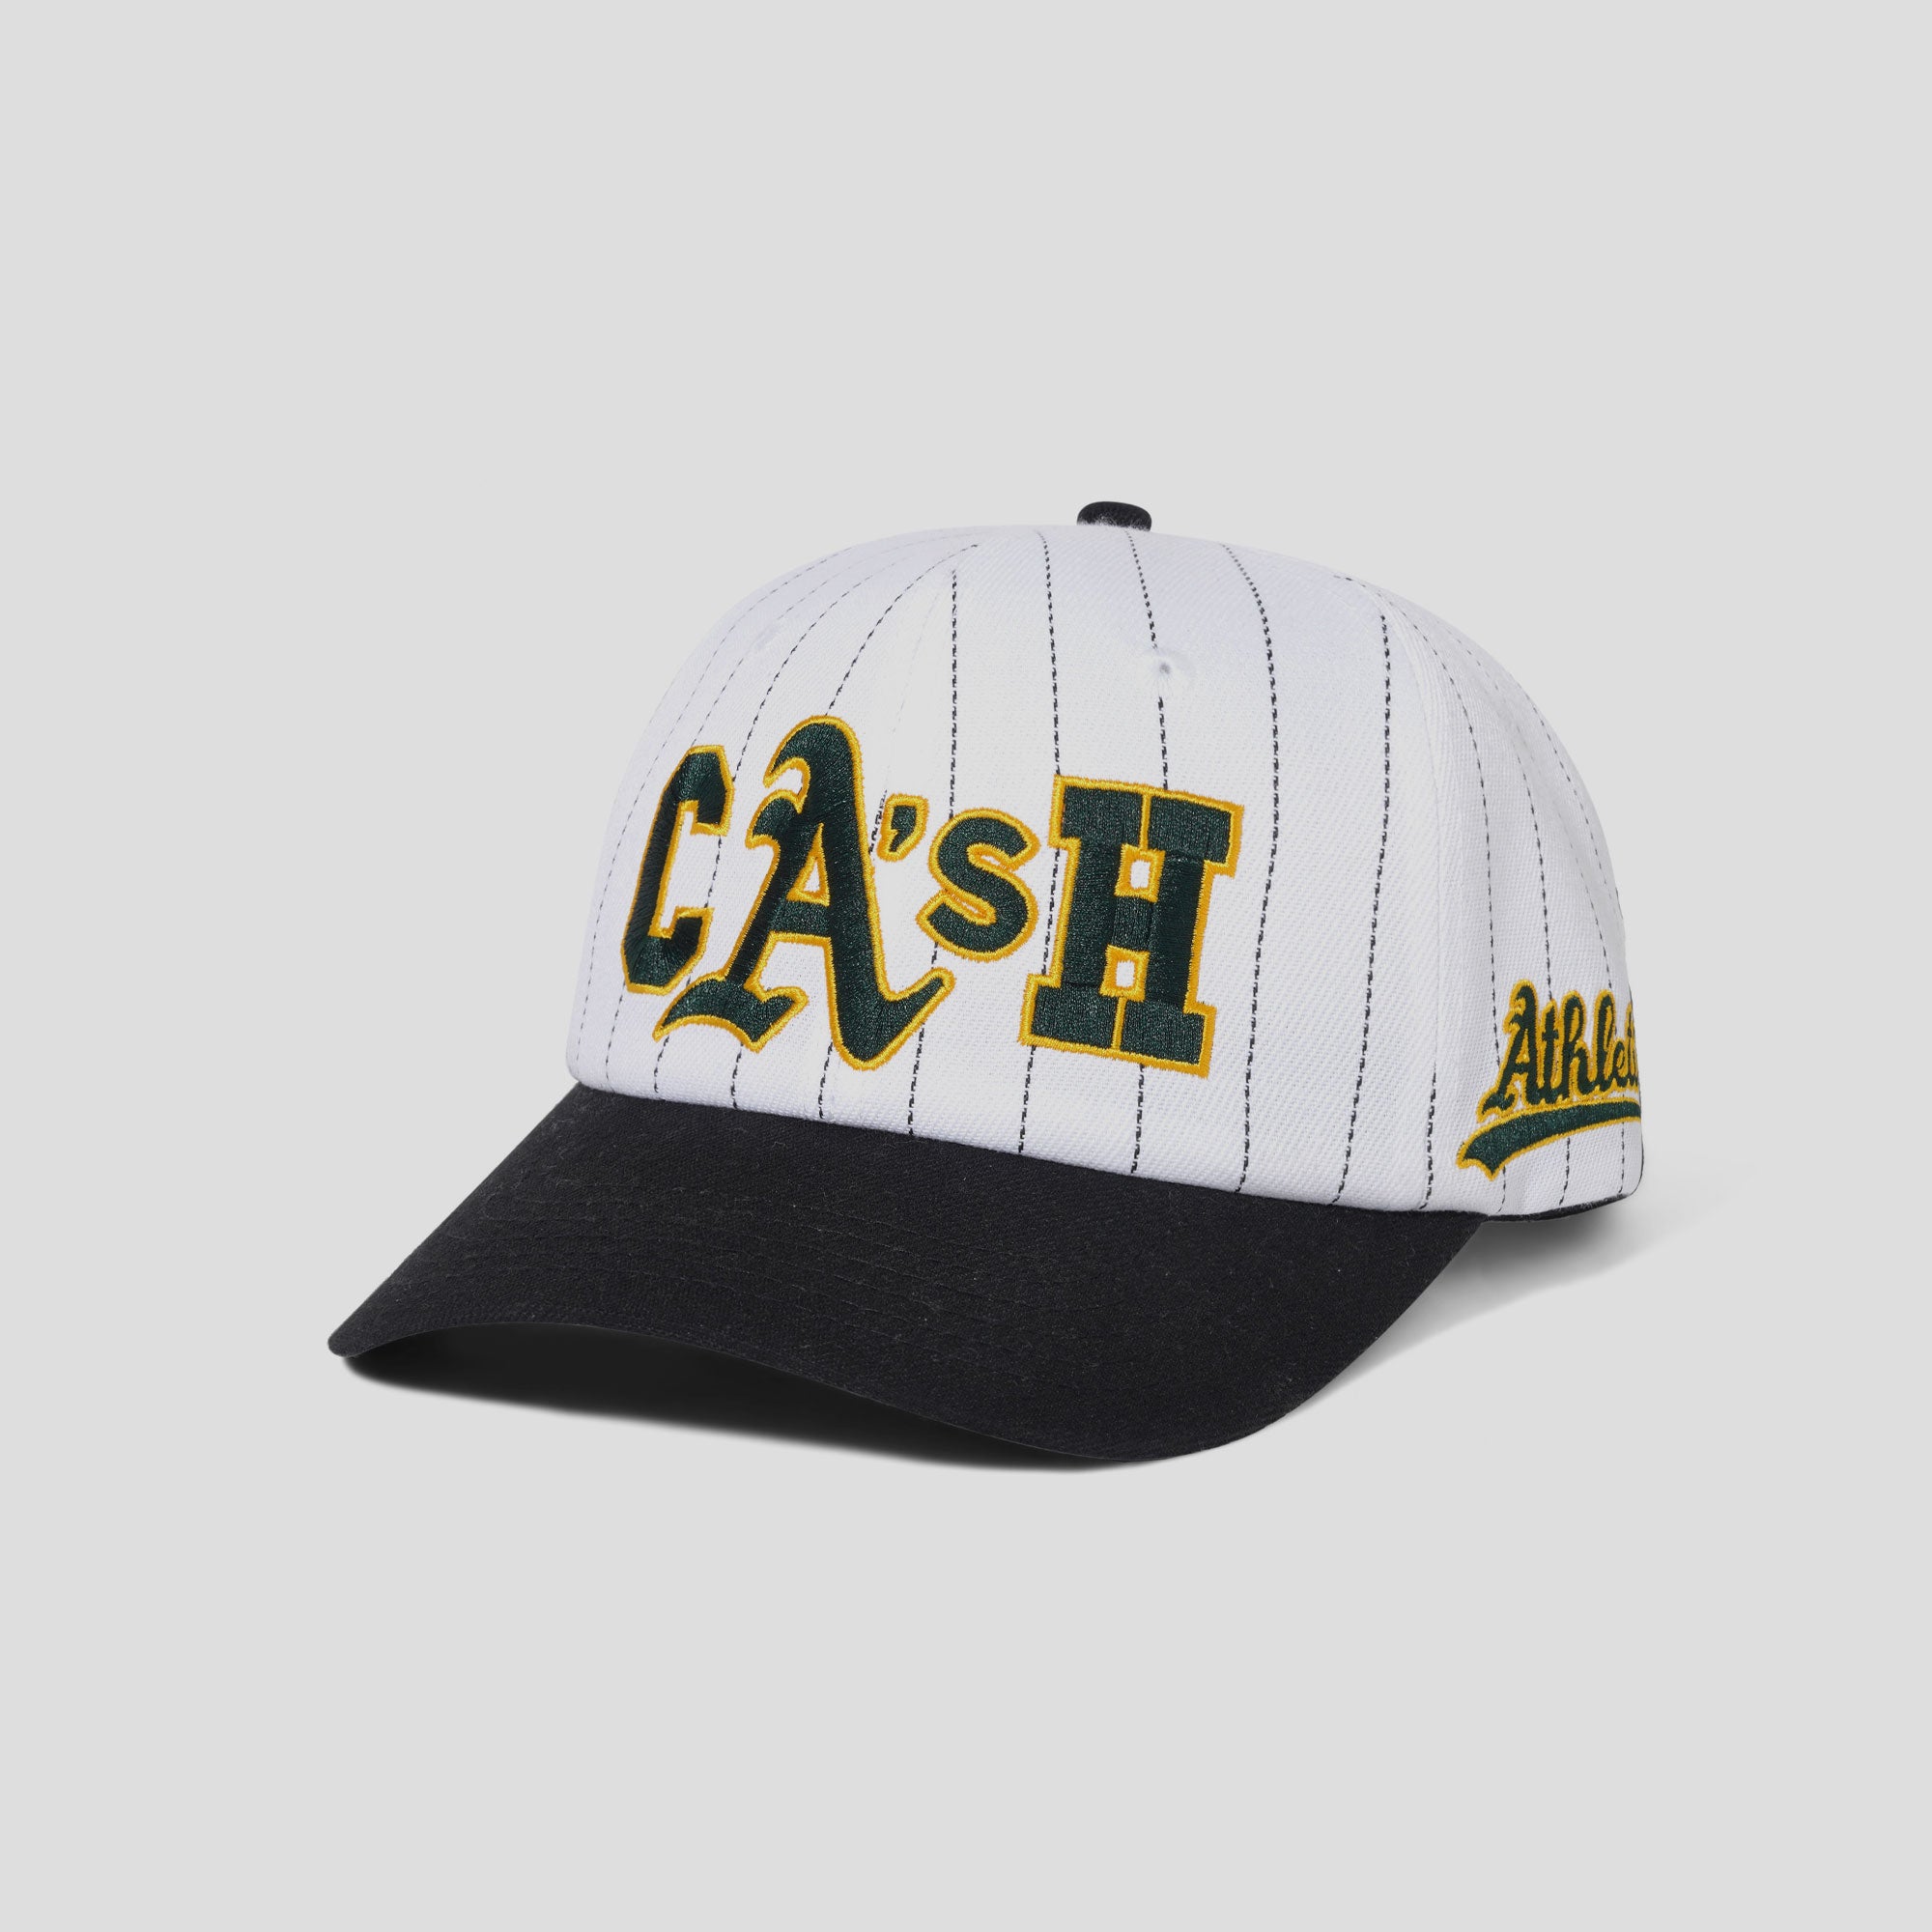 Cash Only Ballpark Snapback Cap - White / Black